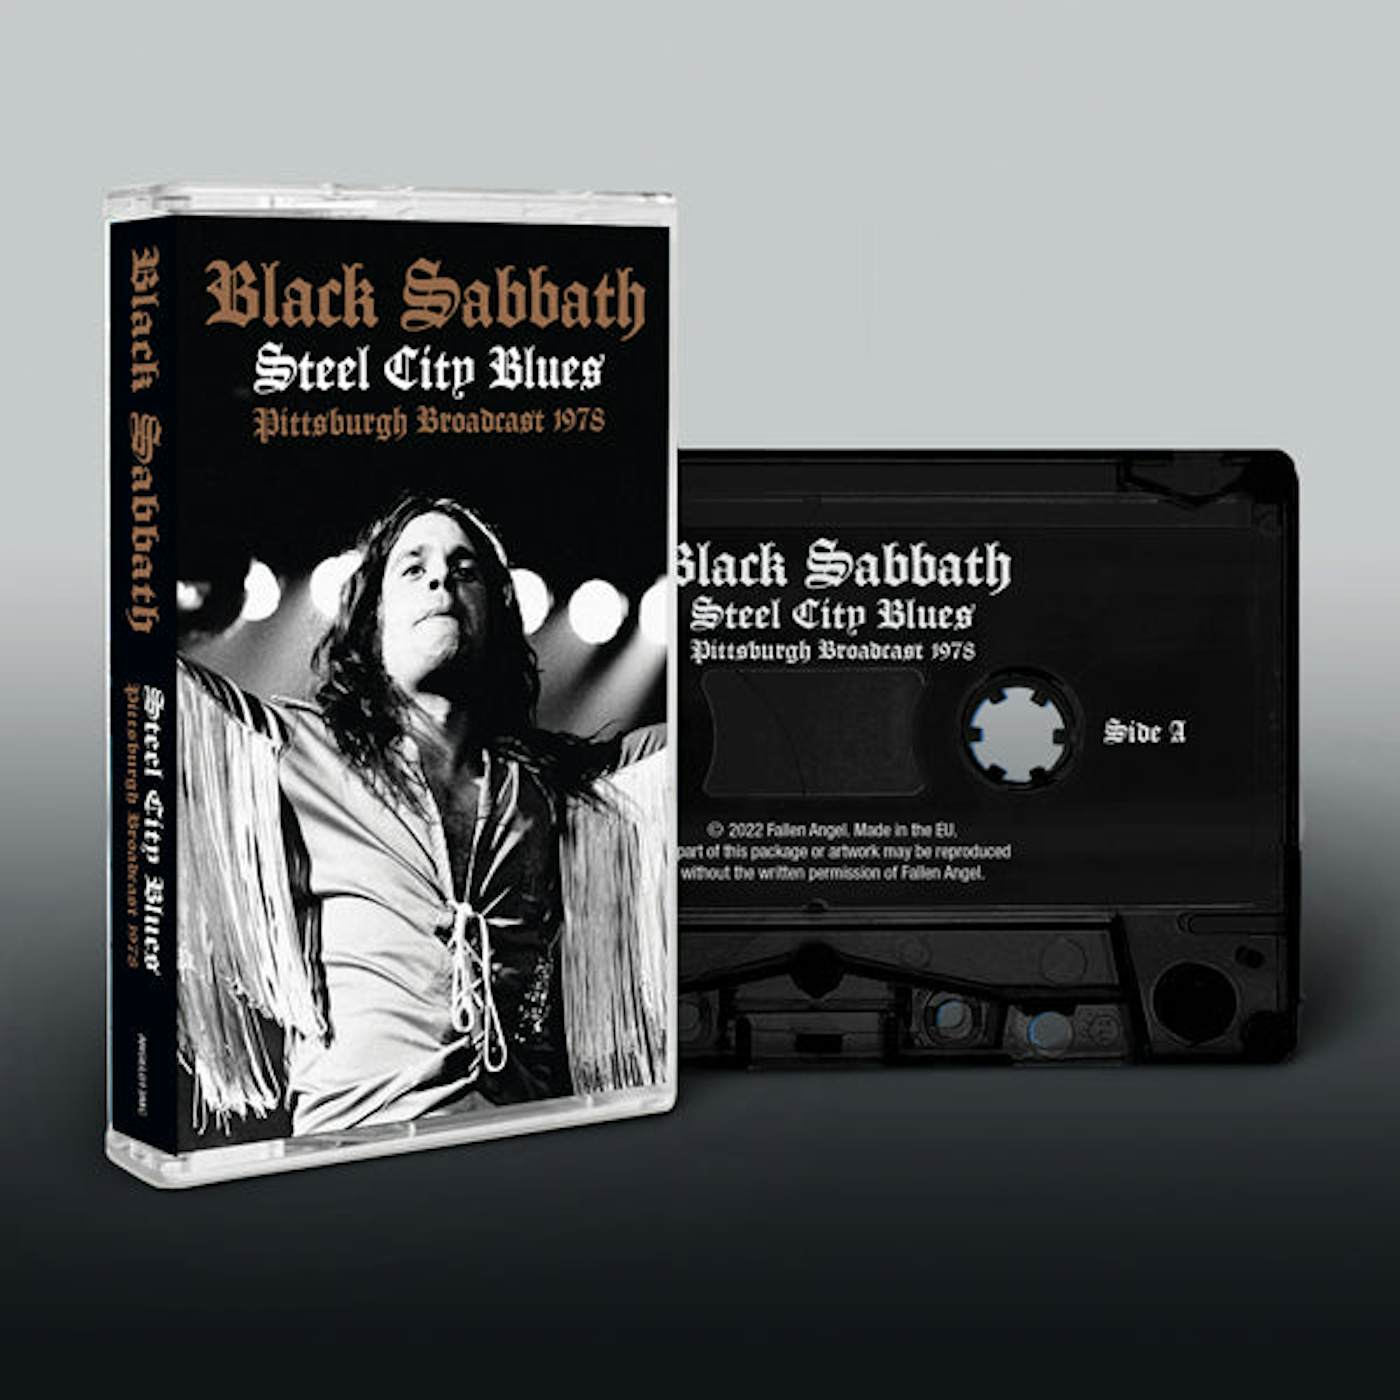 Black Sabbath Music Cassette - Steel City Blues